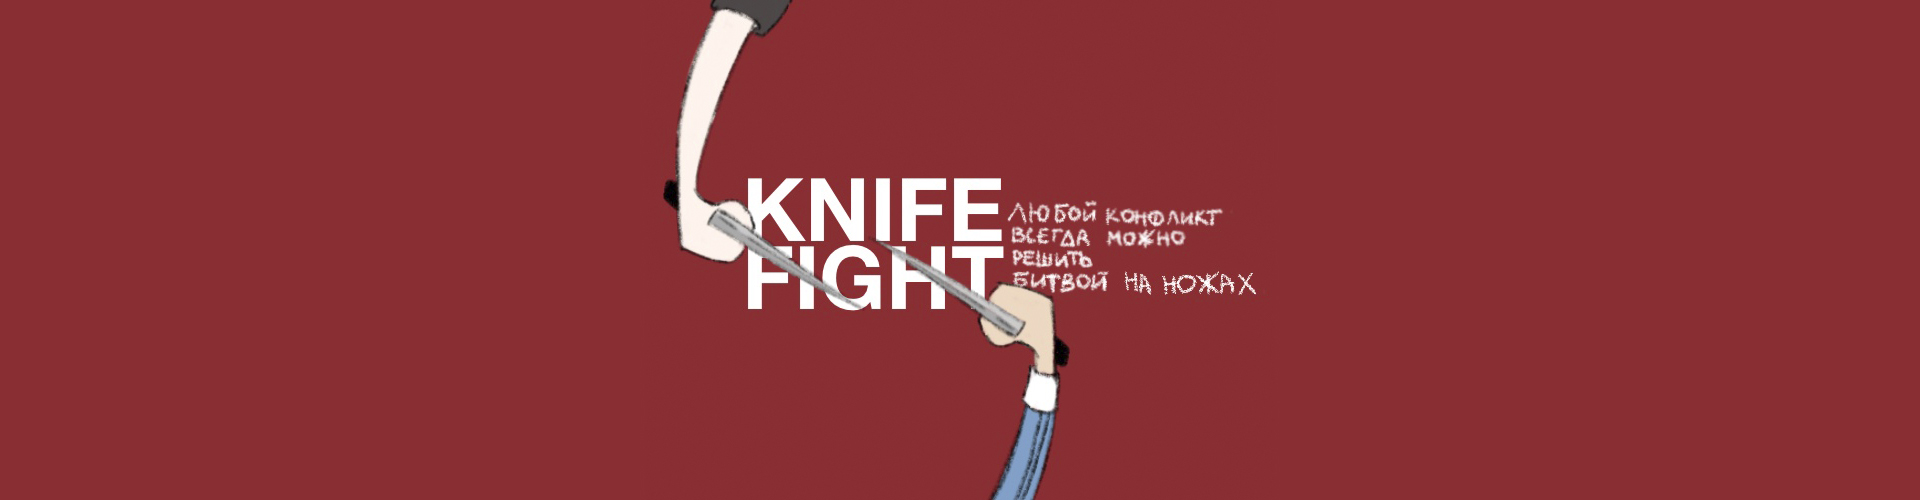 KNIFE FIGHT!